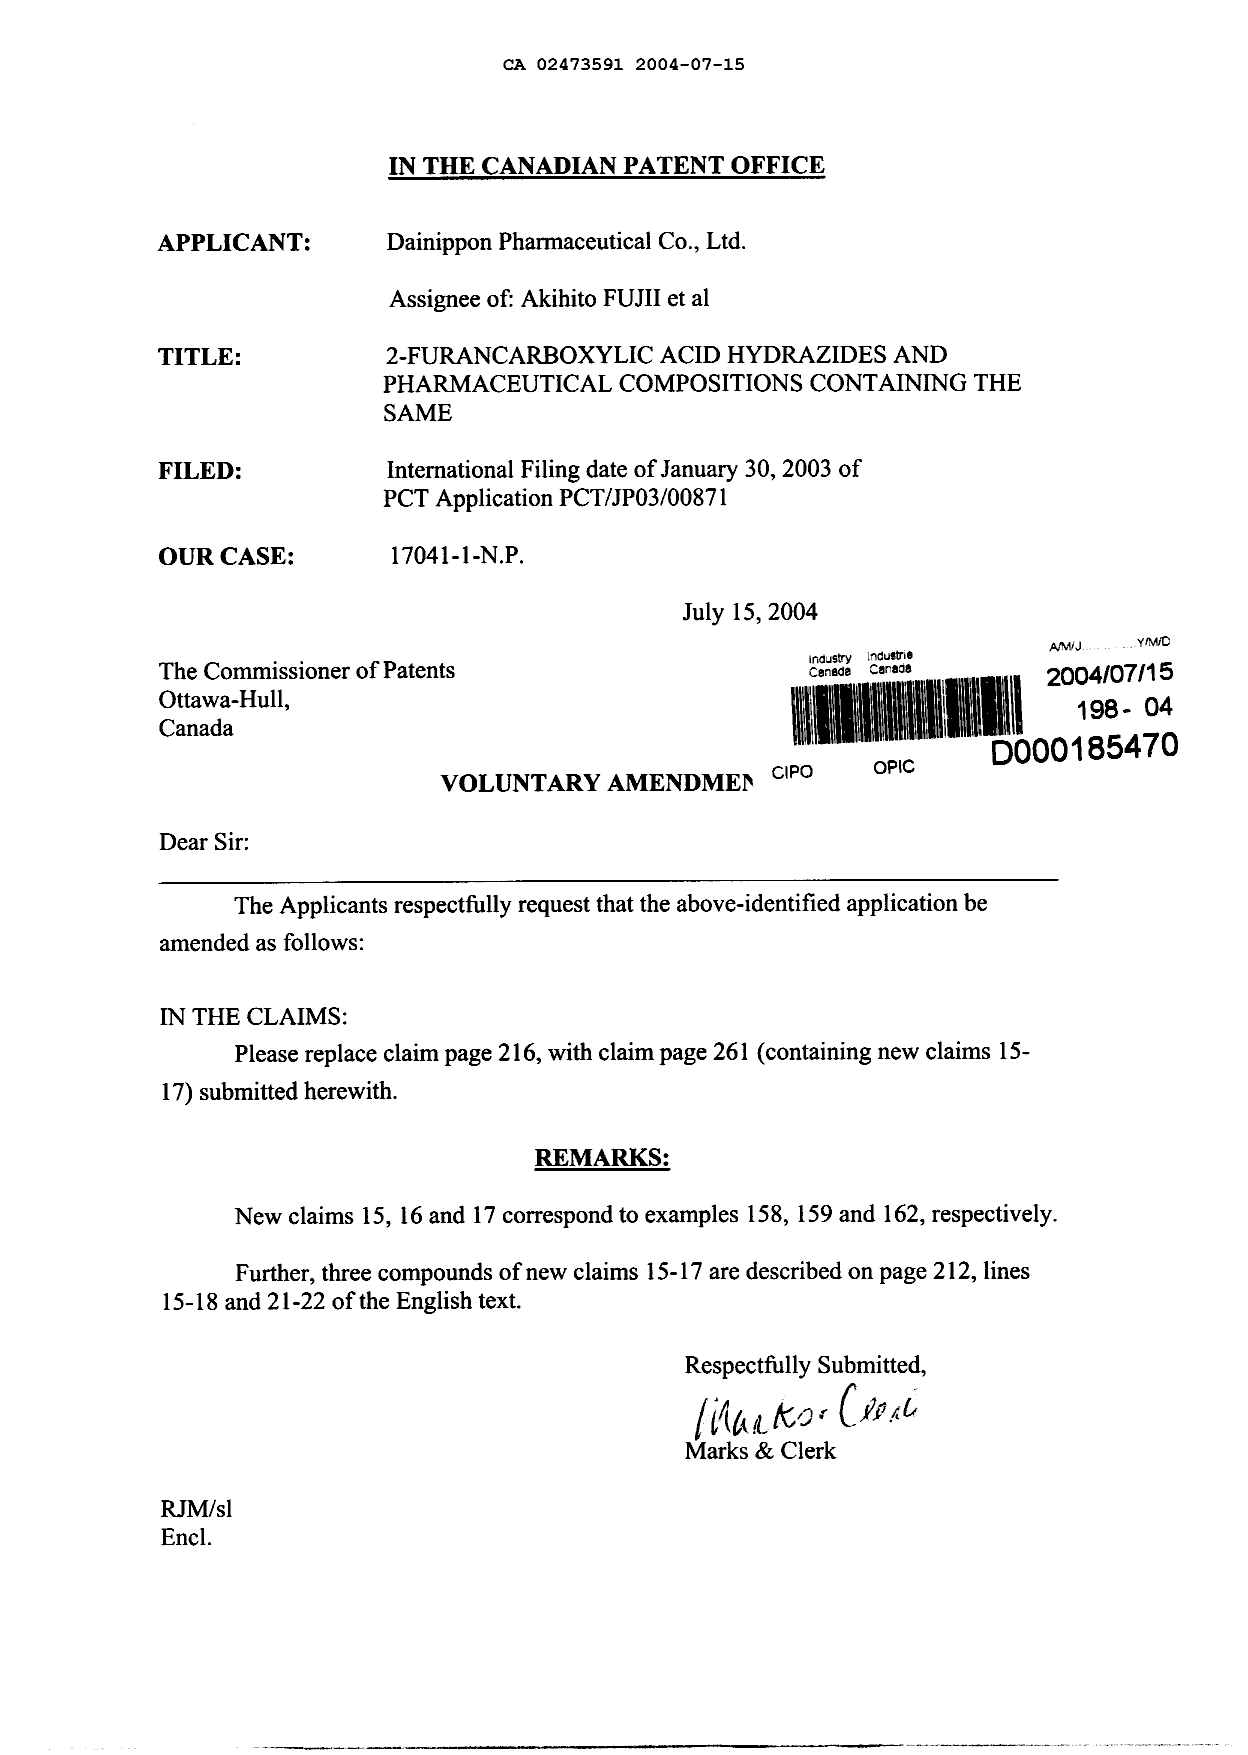 Document de brevet canadien 2473591. Poursuite-Amendment 20040715. Image 1 de 2